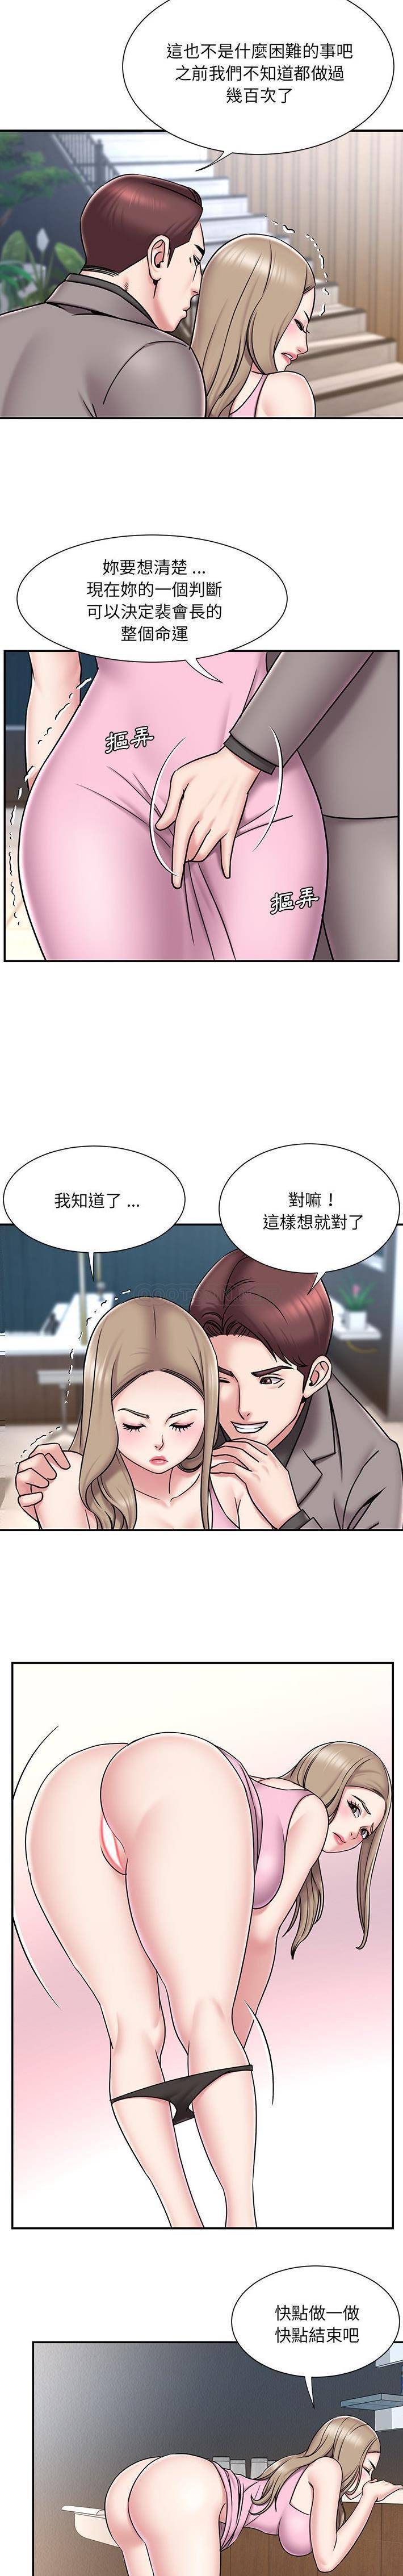 韩国污漫画 被拋棄的男人(男孩沒人愛) 第52话 13